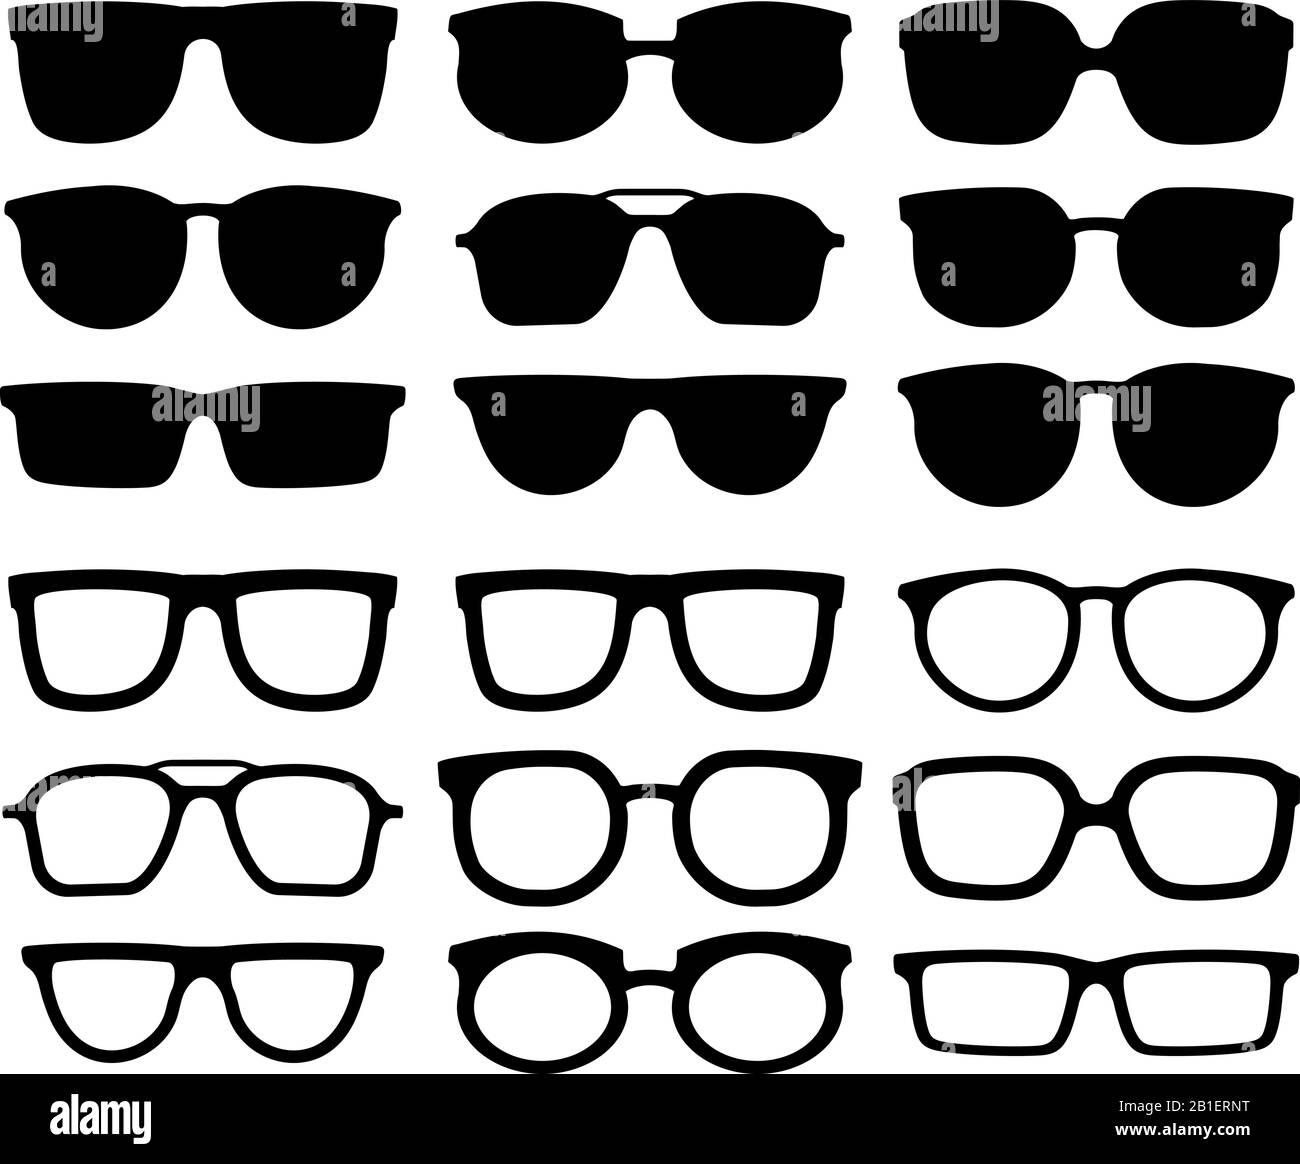 Silhouette des lunettes. Lunettes de vue geek, lunettes de soleil fraîches  et lunettes de vue silhouettes collection vectorielle Image Vectorielle  Stock - Alamy